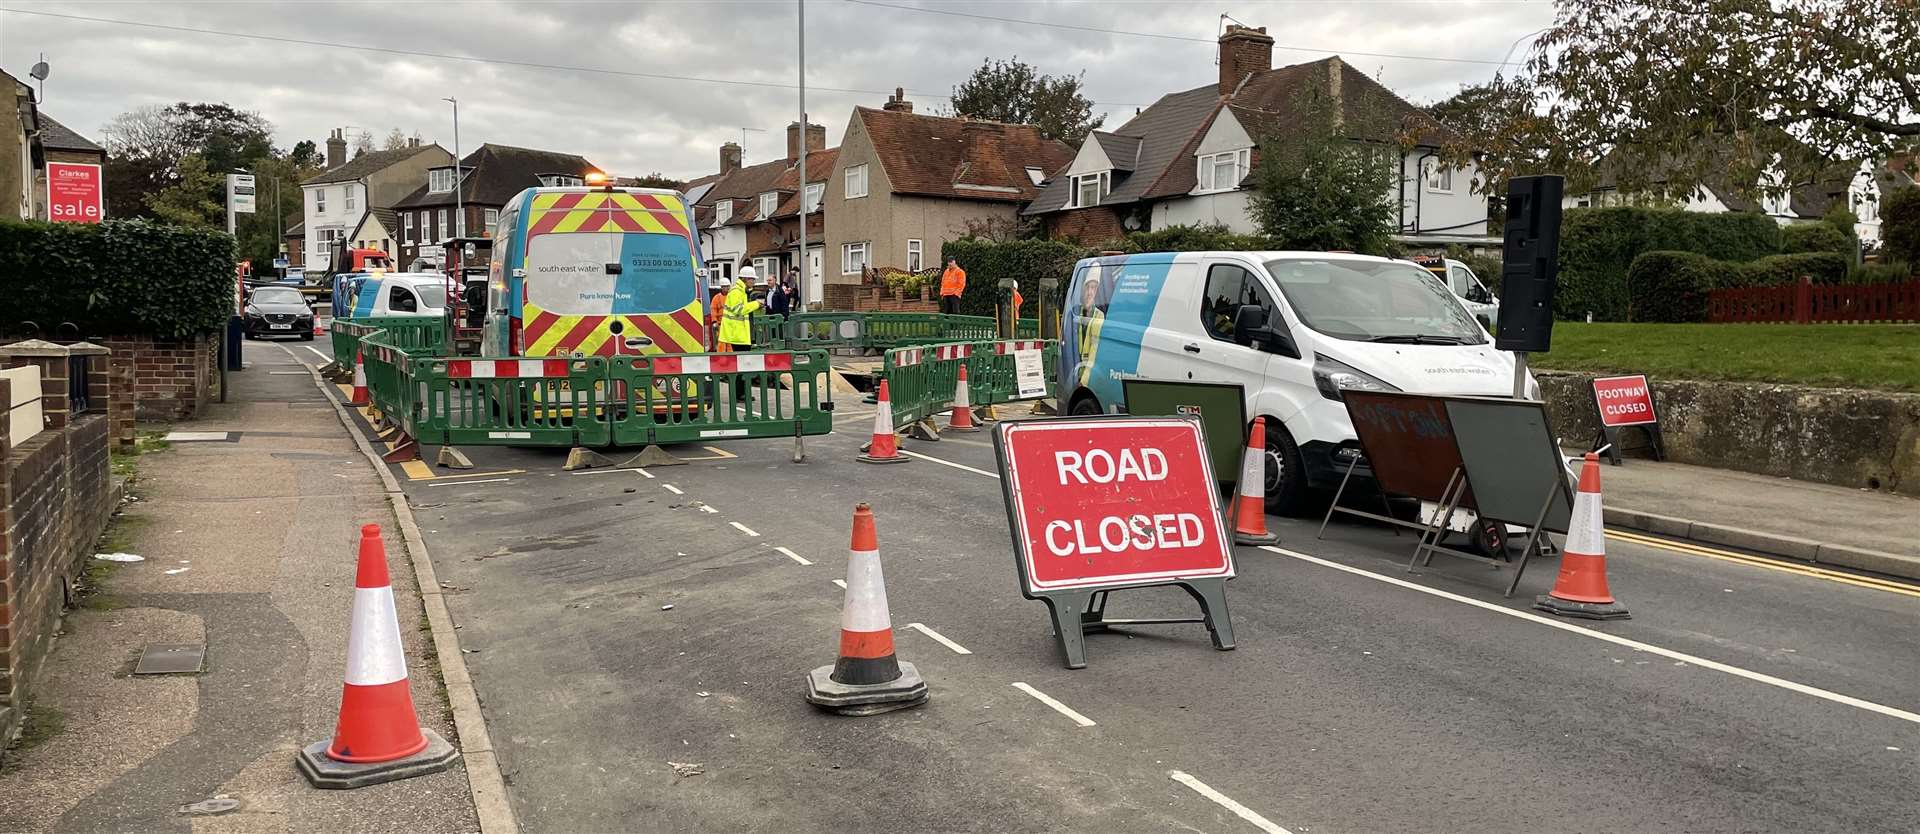 The closure is between Queen's Road and Hambledon Court